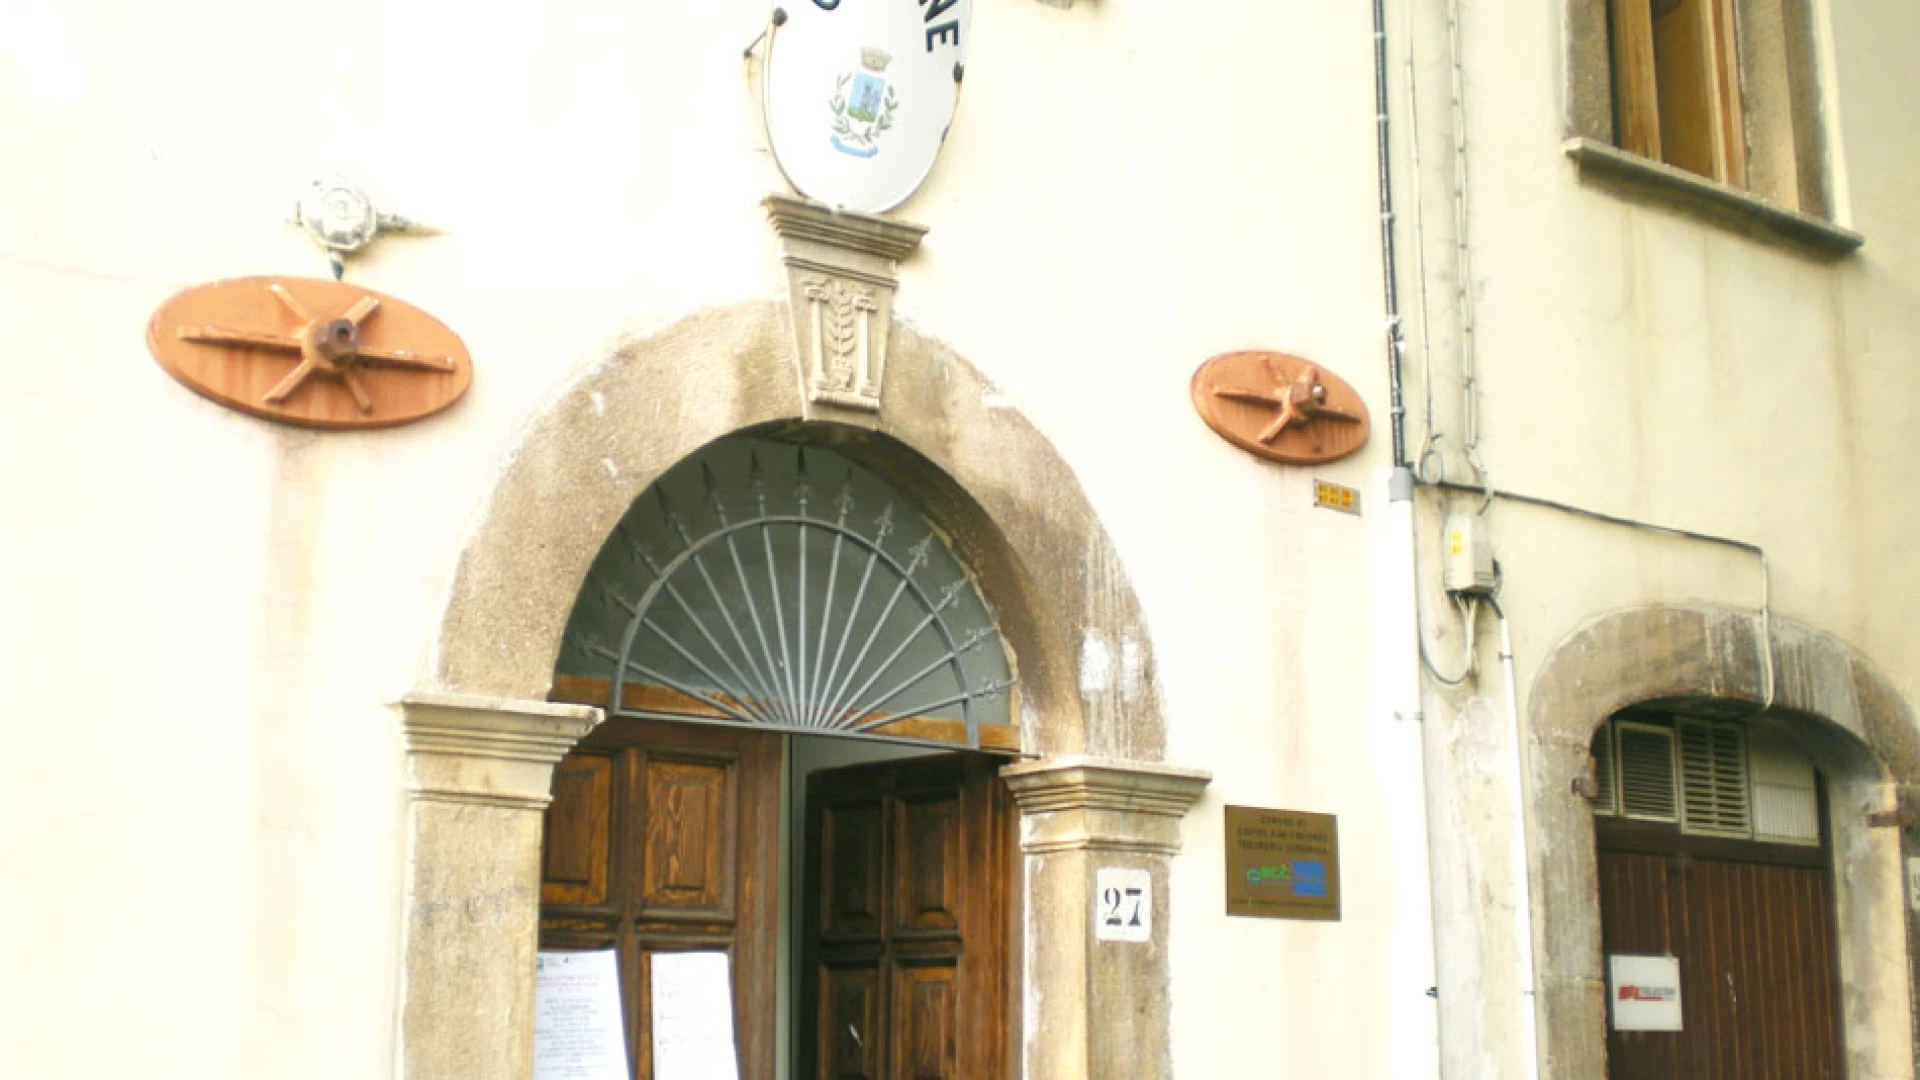 Castel San Vincenzo: caso Di Cicco, la sentenza a carico del sindaco verrà discussa il 10 febbraio in Consiglio comunale. Si prevede una seduta infuocata.